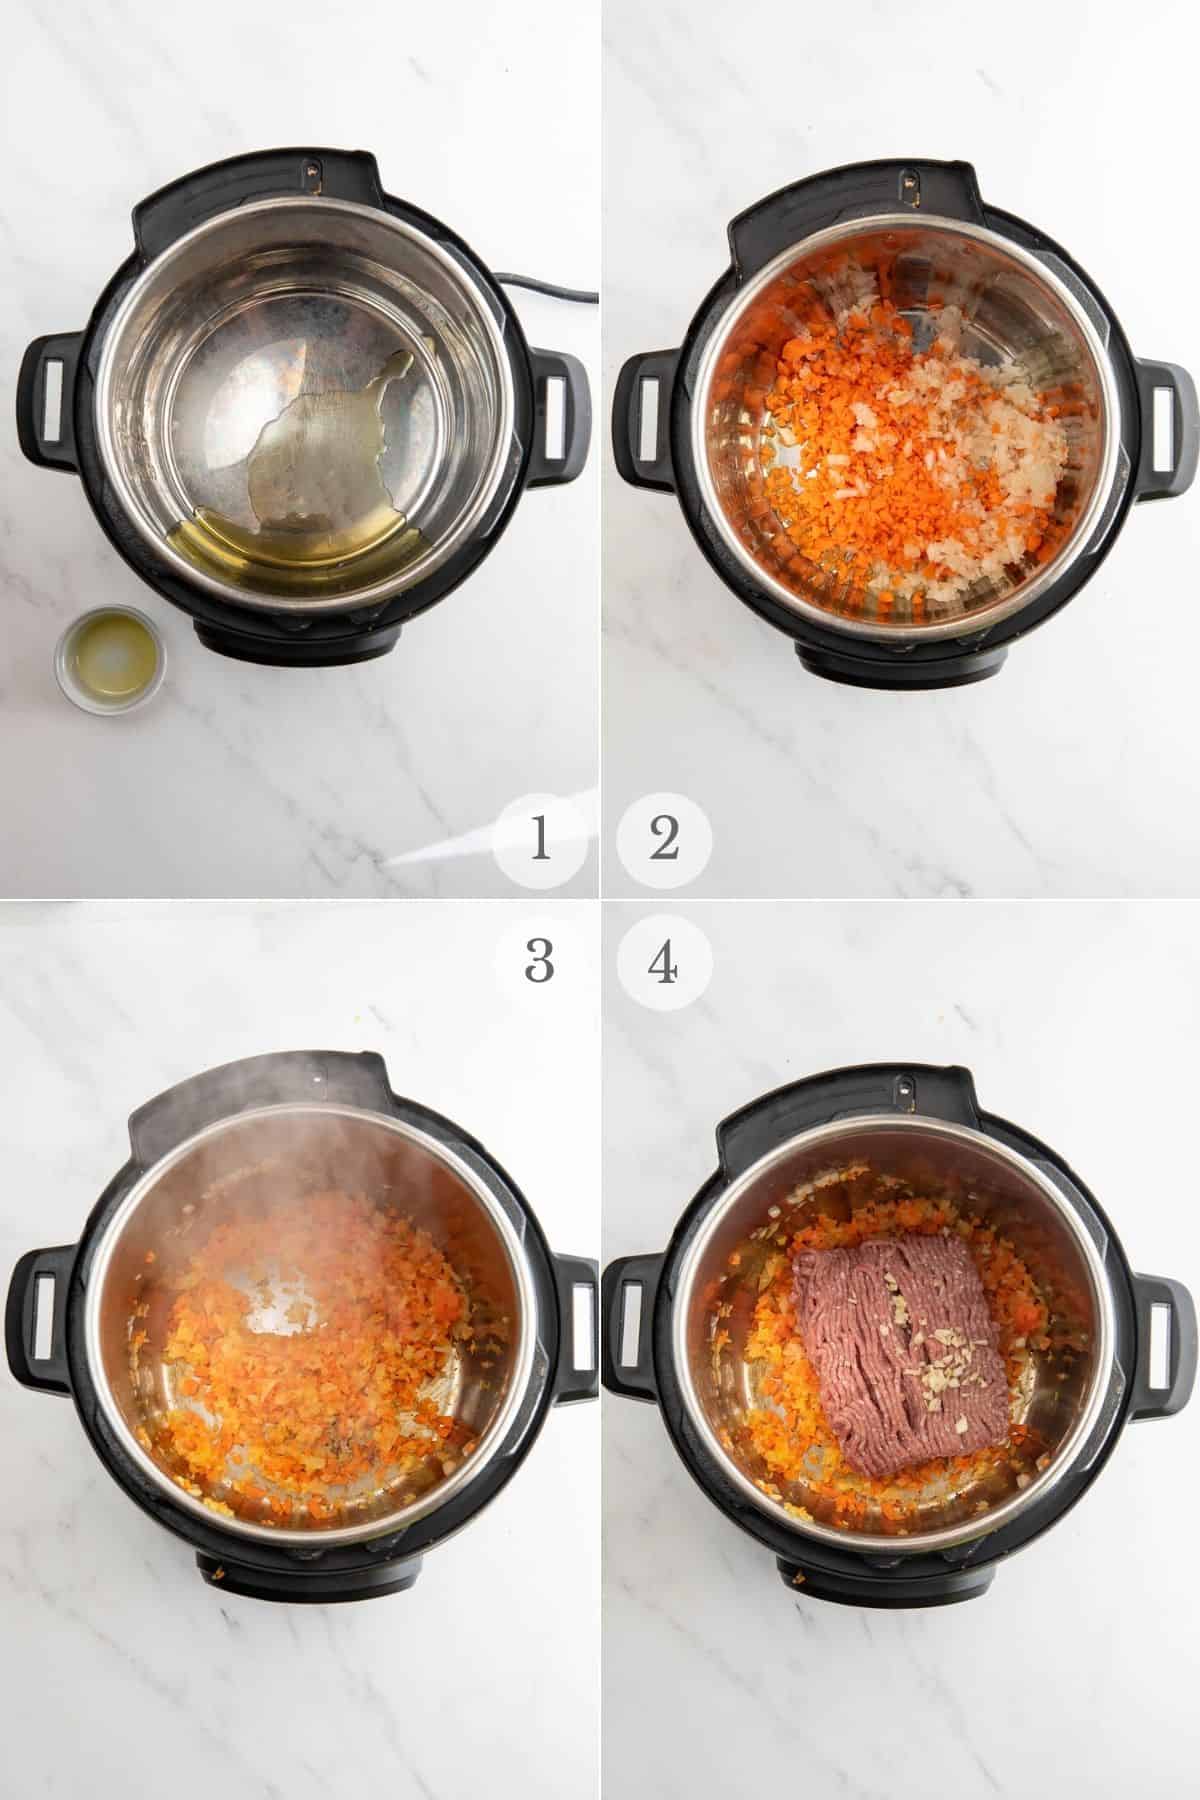 white bean turkey chili recipe steps 1-4